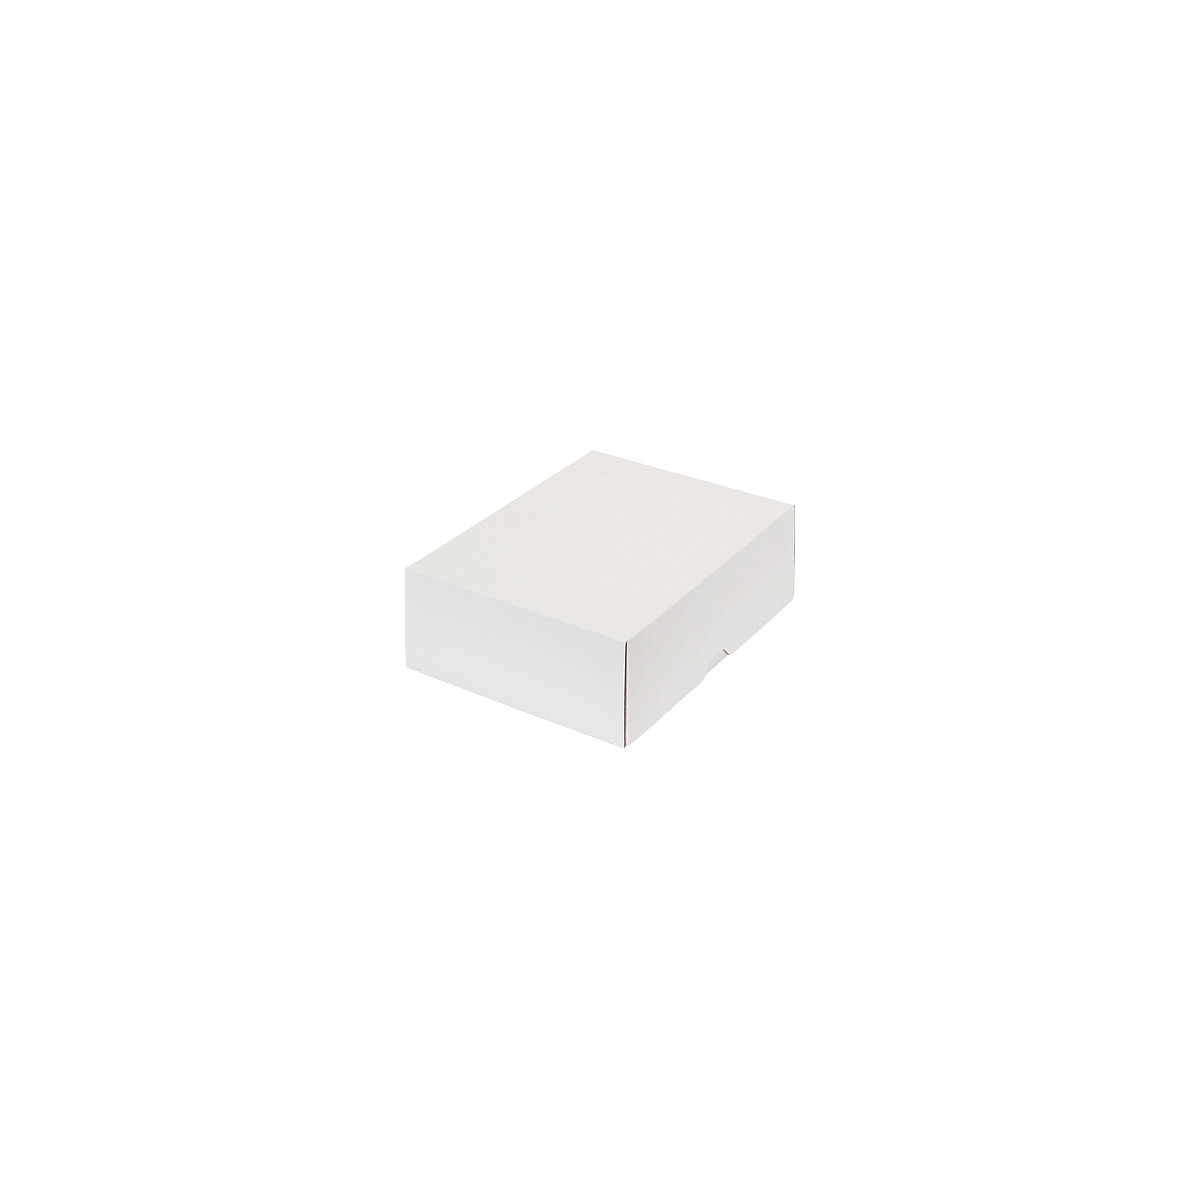 Stülpdeckelkarton, zweiteilig, Innenmaße 252 x 180 x 79 mm, B5, weiß, ab 300 Stk-14